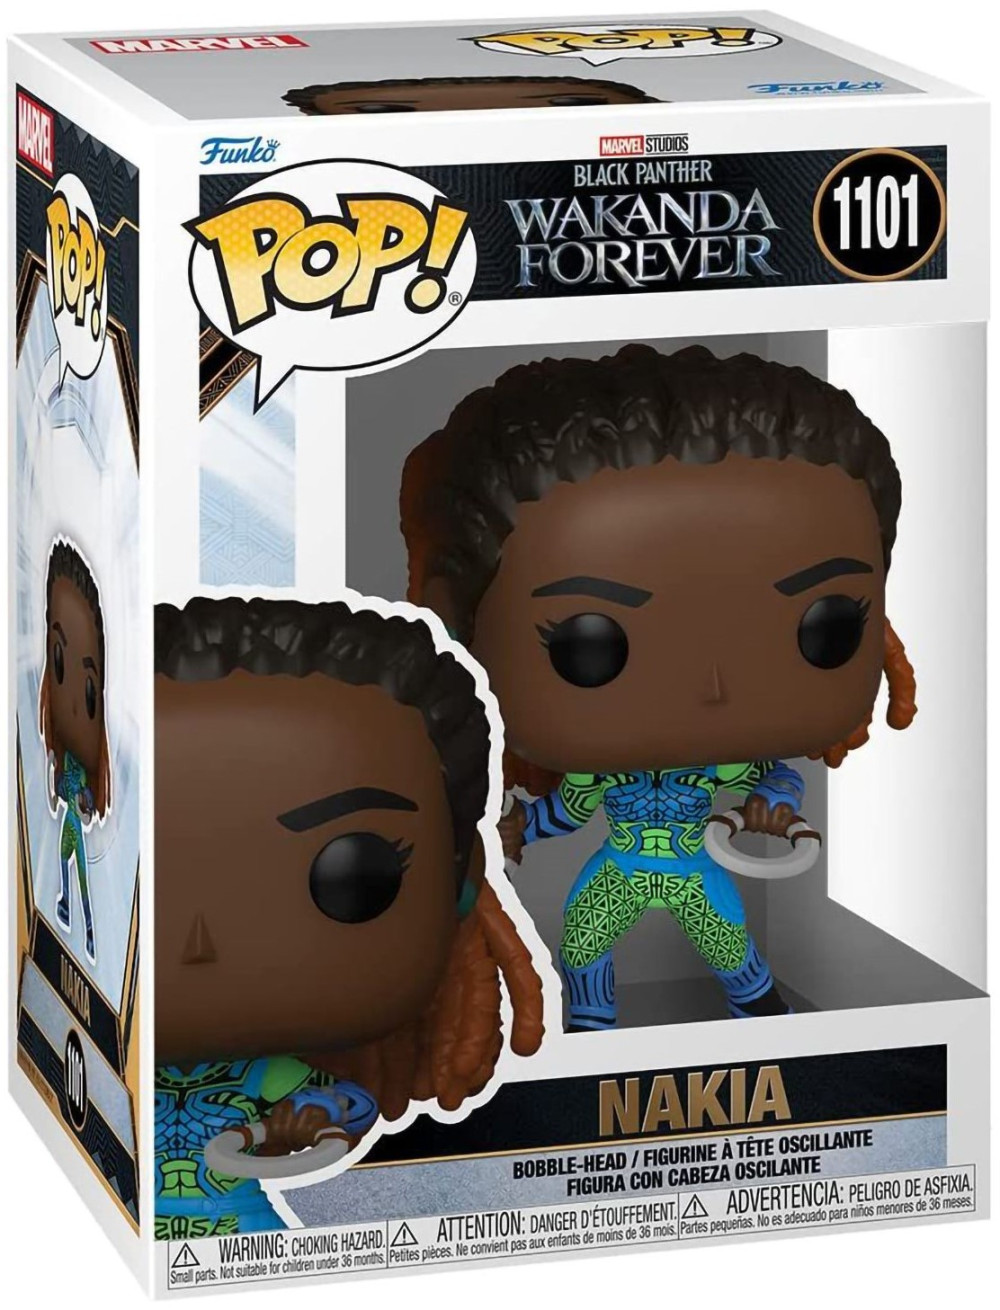  Funko POP Marvel Black Panther: Wakanda Forever  Nakia Bobble-Head (9,5 )